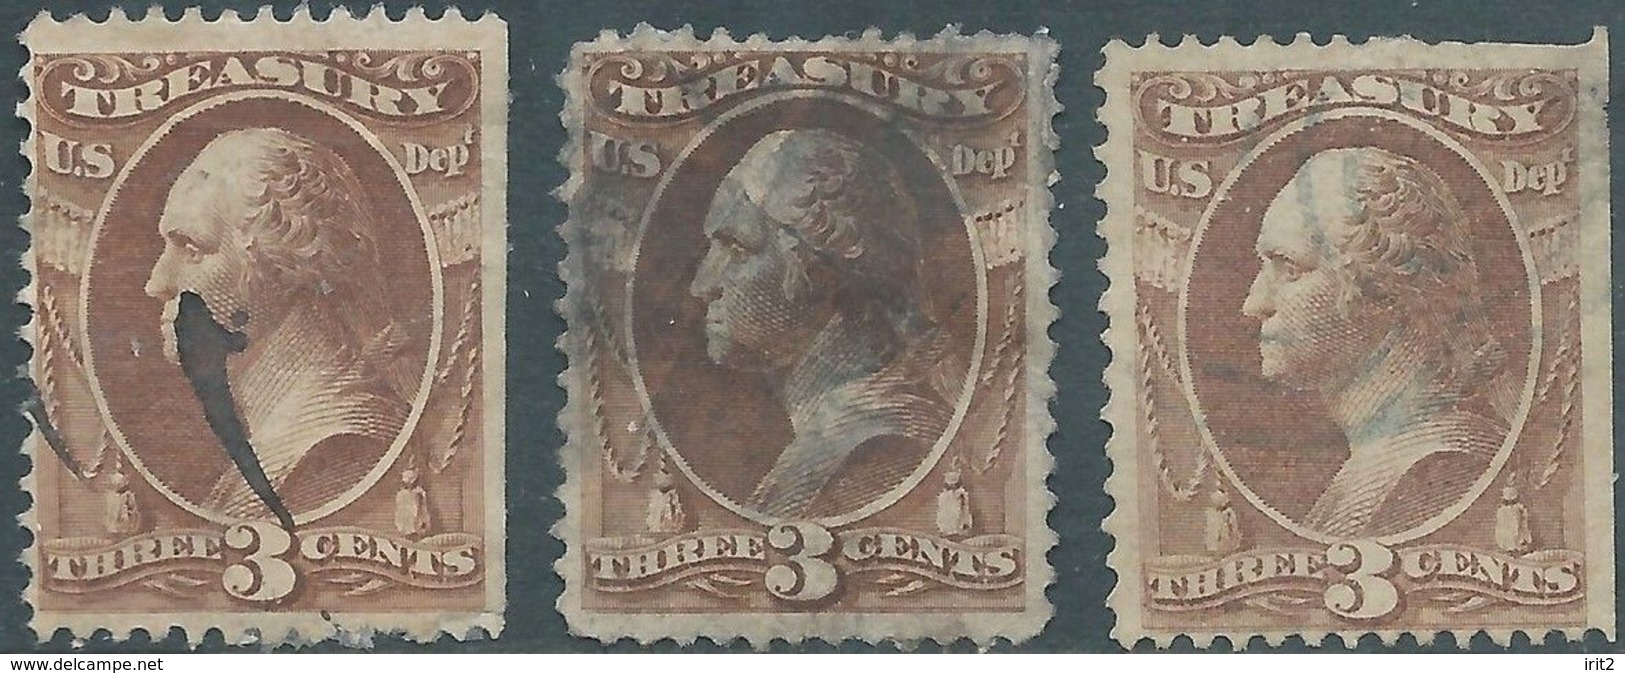 Stati Uniti D'america,United States,U.S.A,1873 Revenue Stamps 3c MINISTRY OF TREASURY,Used - Servizio